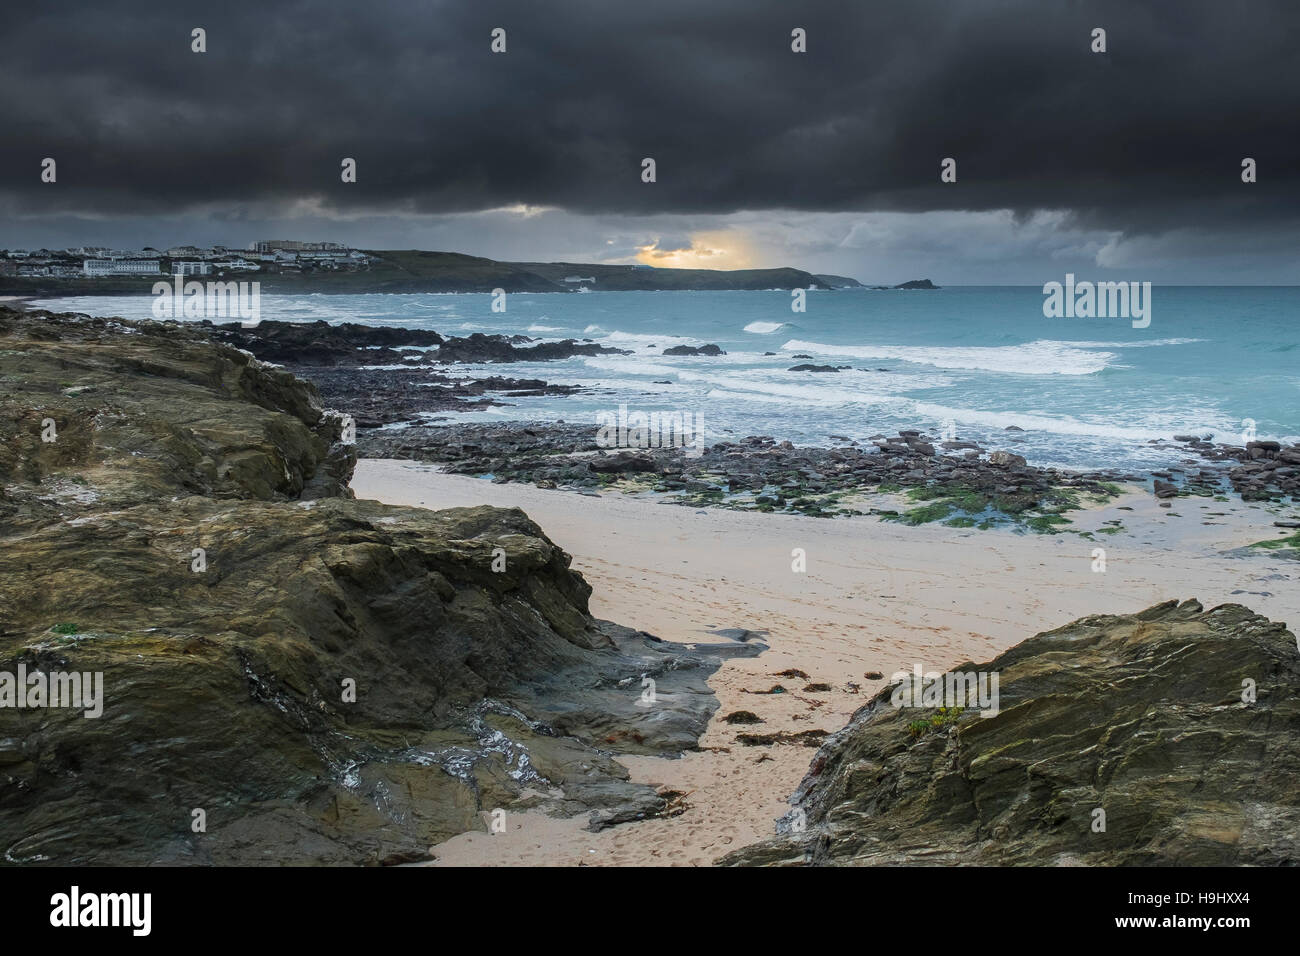 Angus Sturm nähert sich wenig Fistral an der Küste von North Cornwall. UK-Wetter. Stockfoto